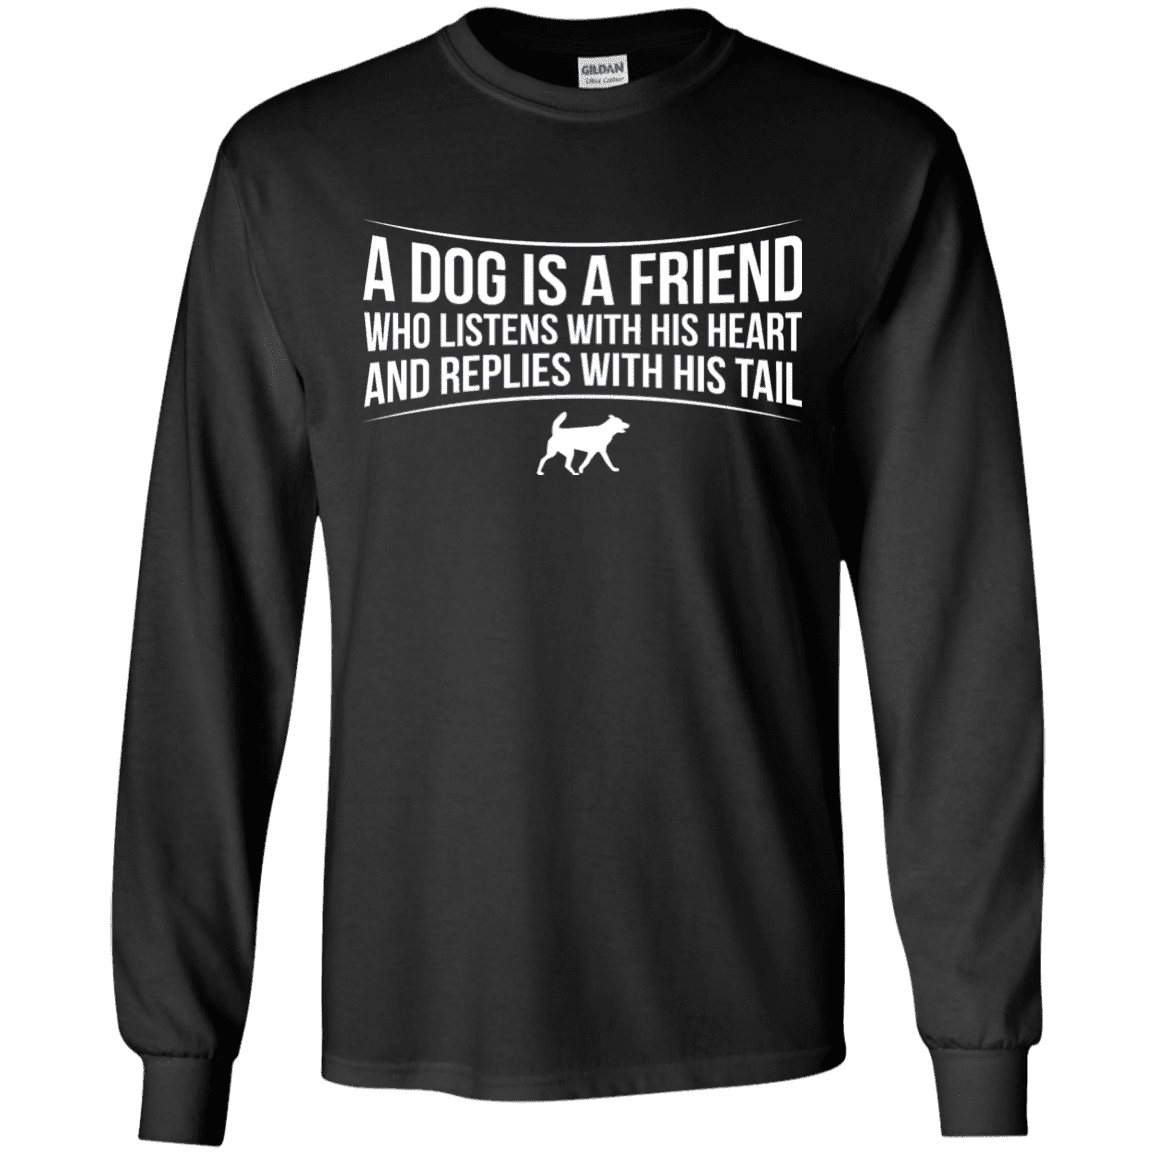 A Dog Is A Friend- Long Sleeve T Shirt.